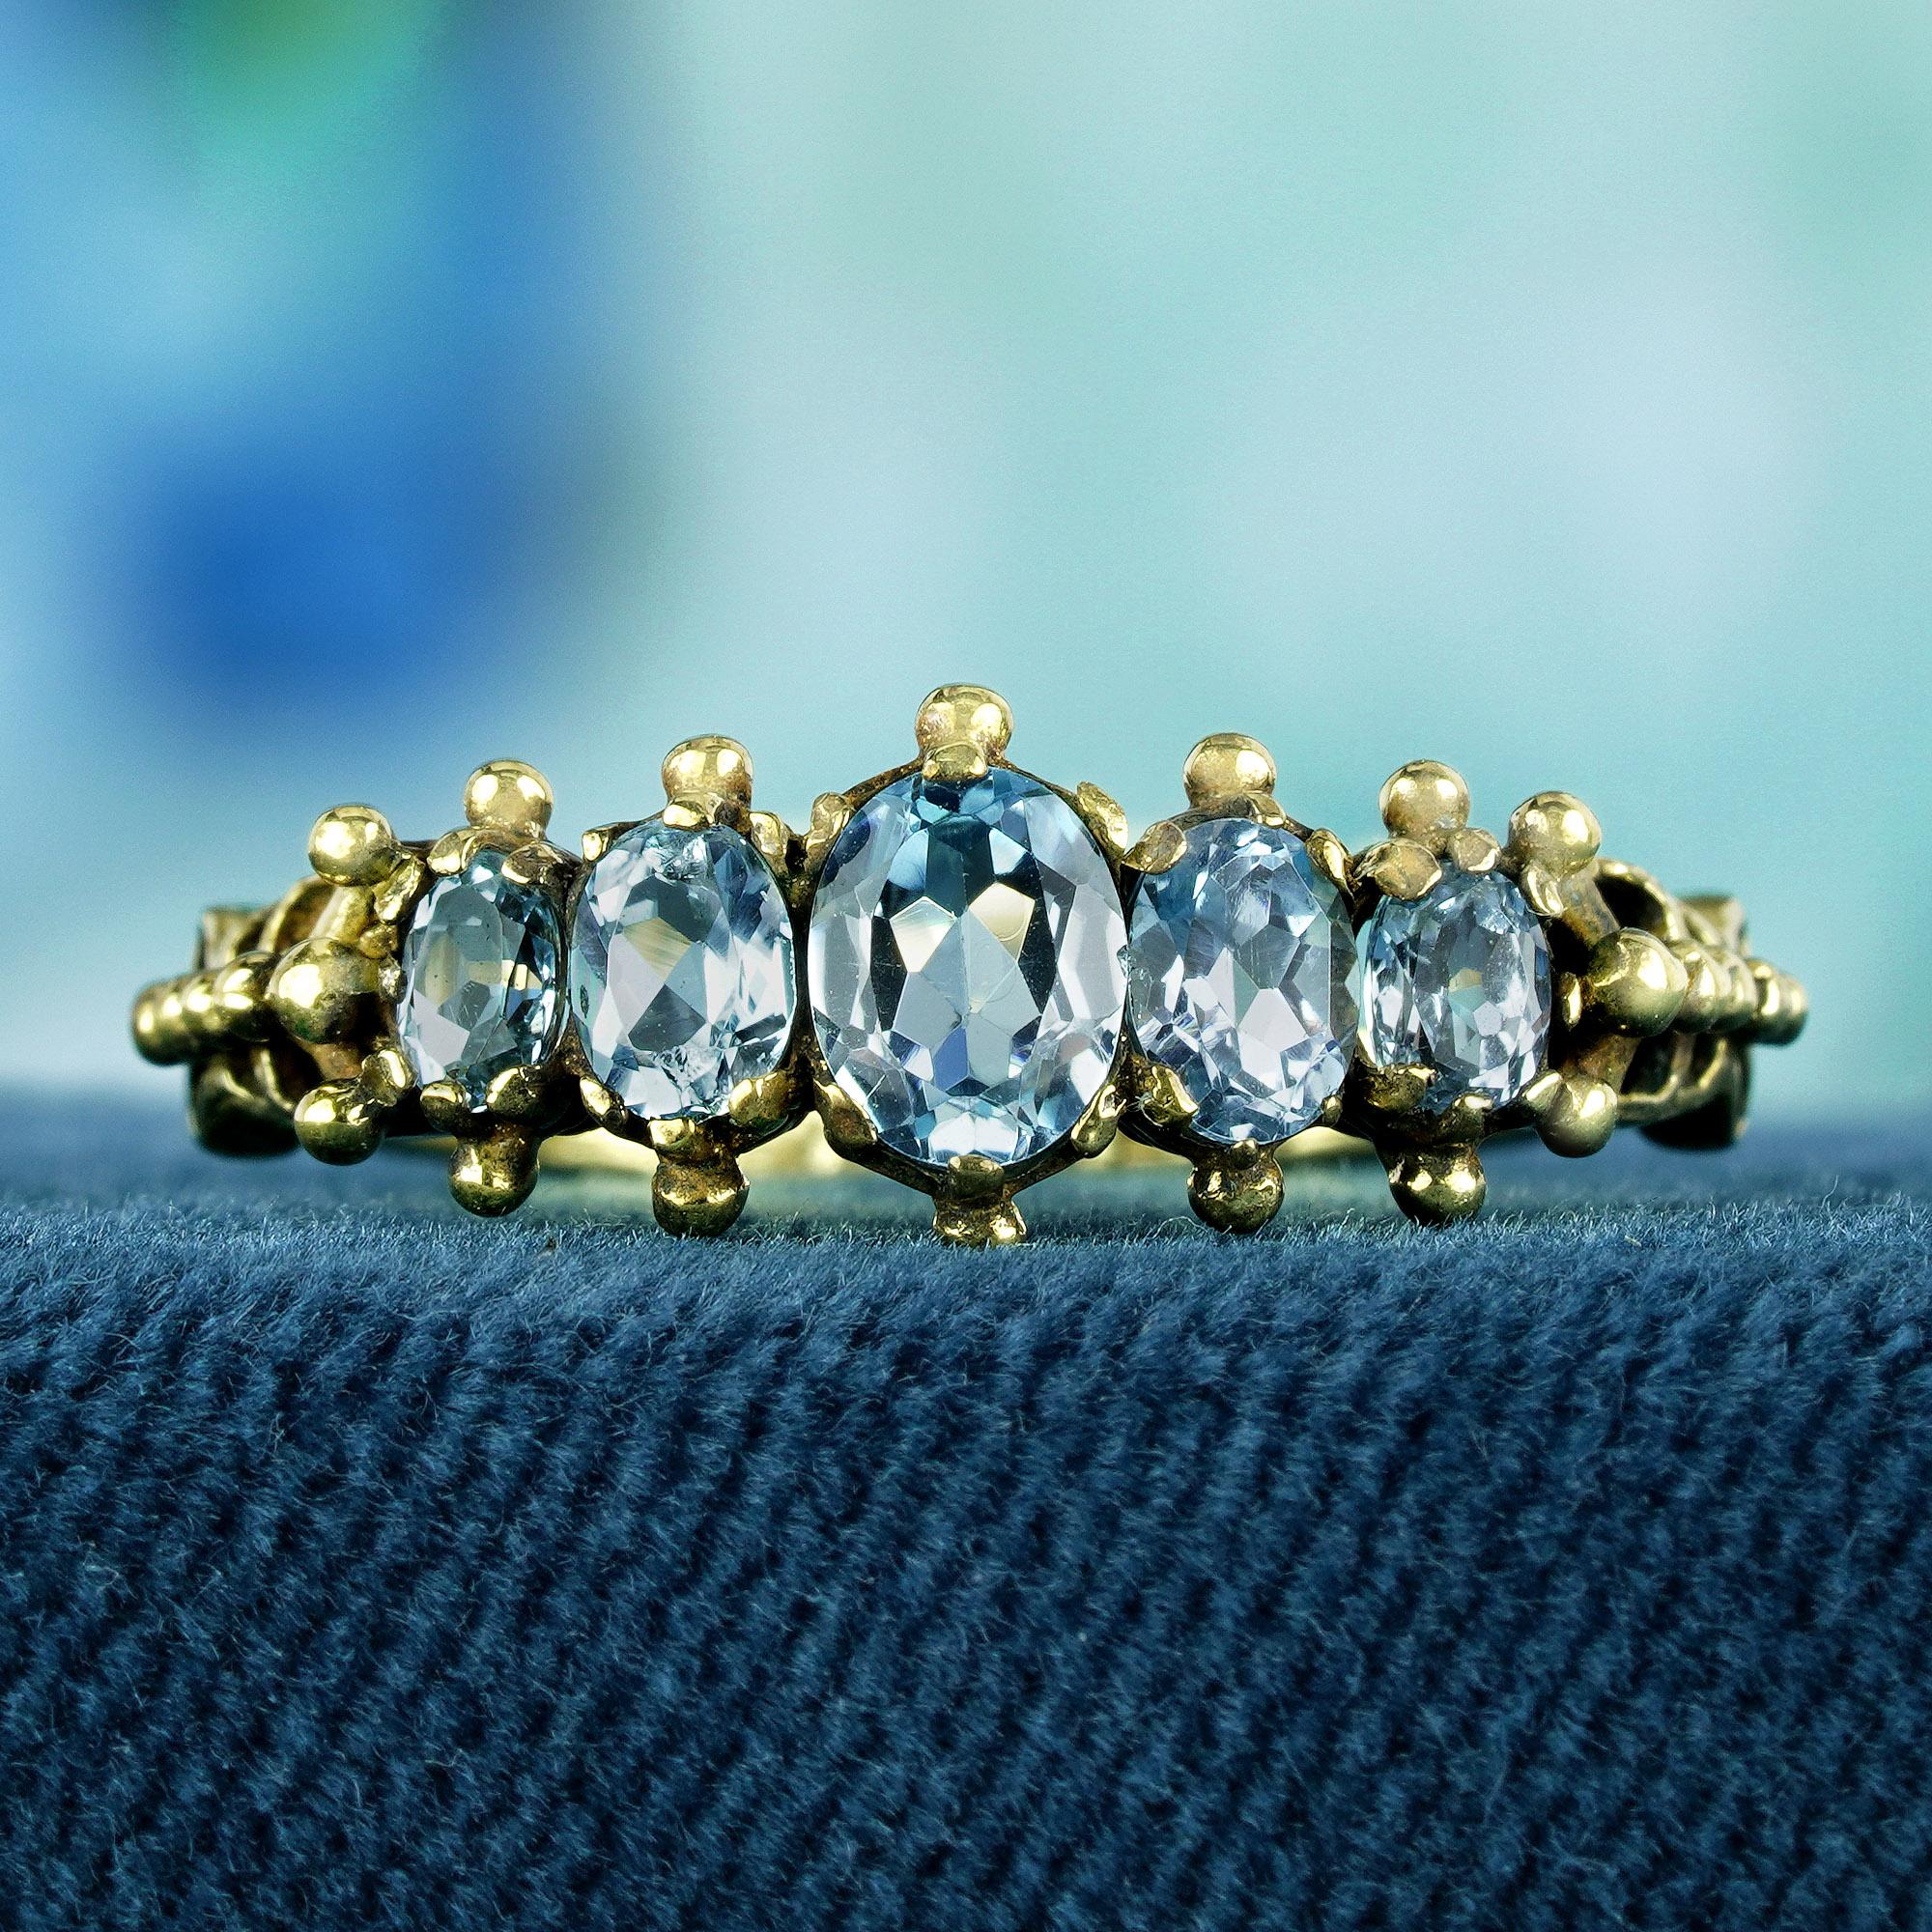 Entdecken Sie zeitlose Eleganz mit unserem Fünf-Steine-Ring aus Gelbgold mit blauem Topas im Vintage-Stil, der zart in einer Zackenfassung liegt. Jeder himmelblaue, ovale Topasstein wurde sorgfältig arrangiert, um die Essenz von Raffinesse und Anmut